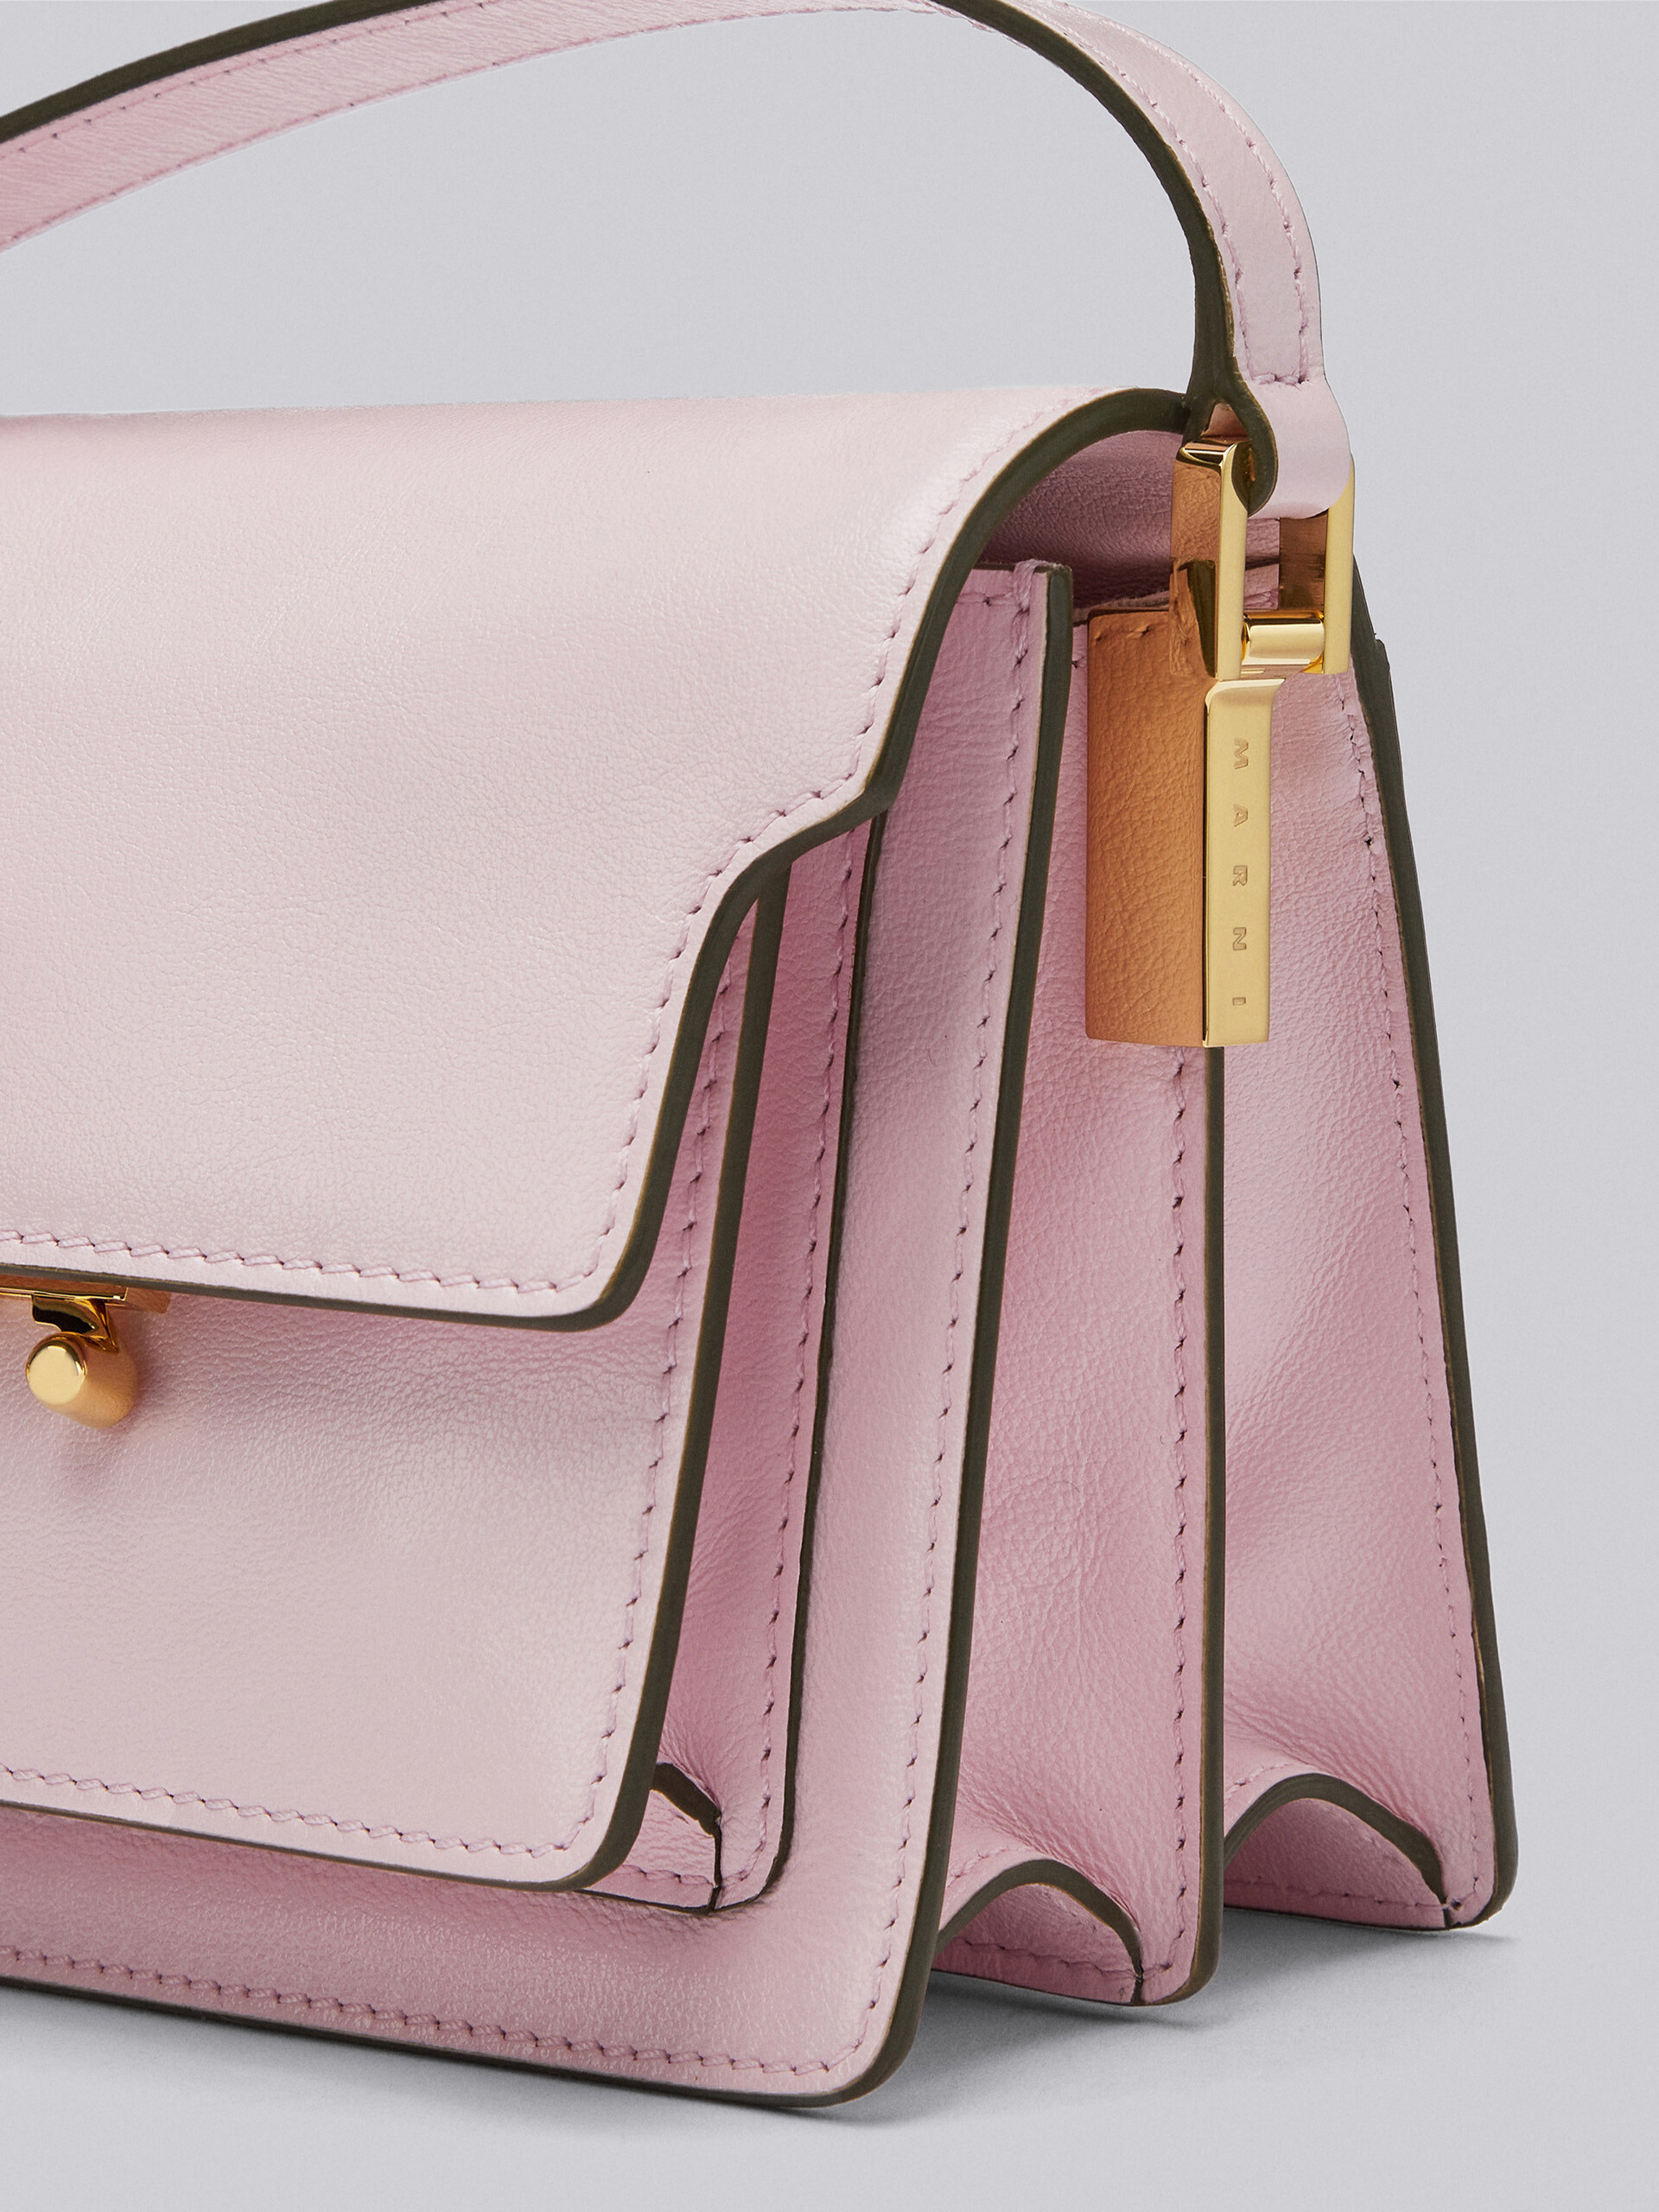 TRUNK SOFT bag mini in pelle rosa - Borse a spalla - Image 3